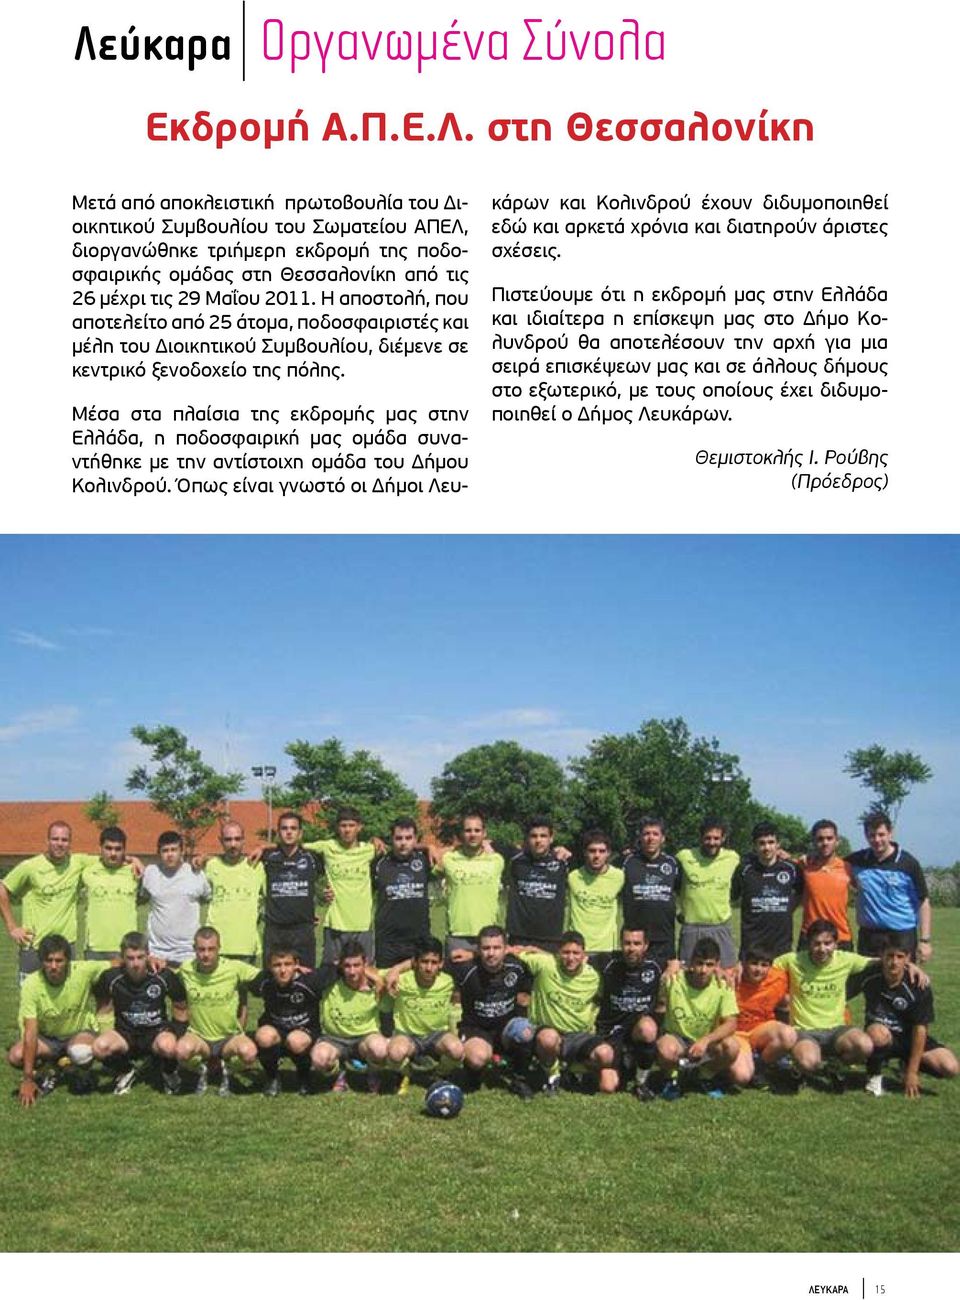 Μέσα στα πλαίσια της εκδρομής μας στην Ελλάδα, η ποδοσφαιρική μας ομάδα συναντήθηκε με την αντίστοιχη ομάδα του Δήμου Κολινδρού.